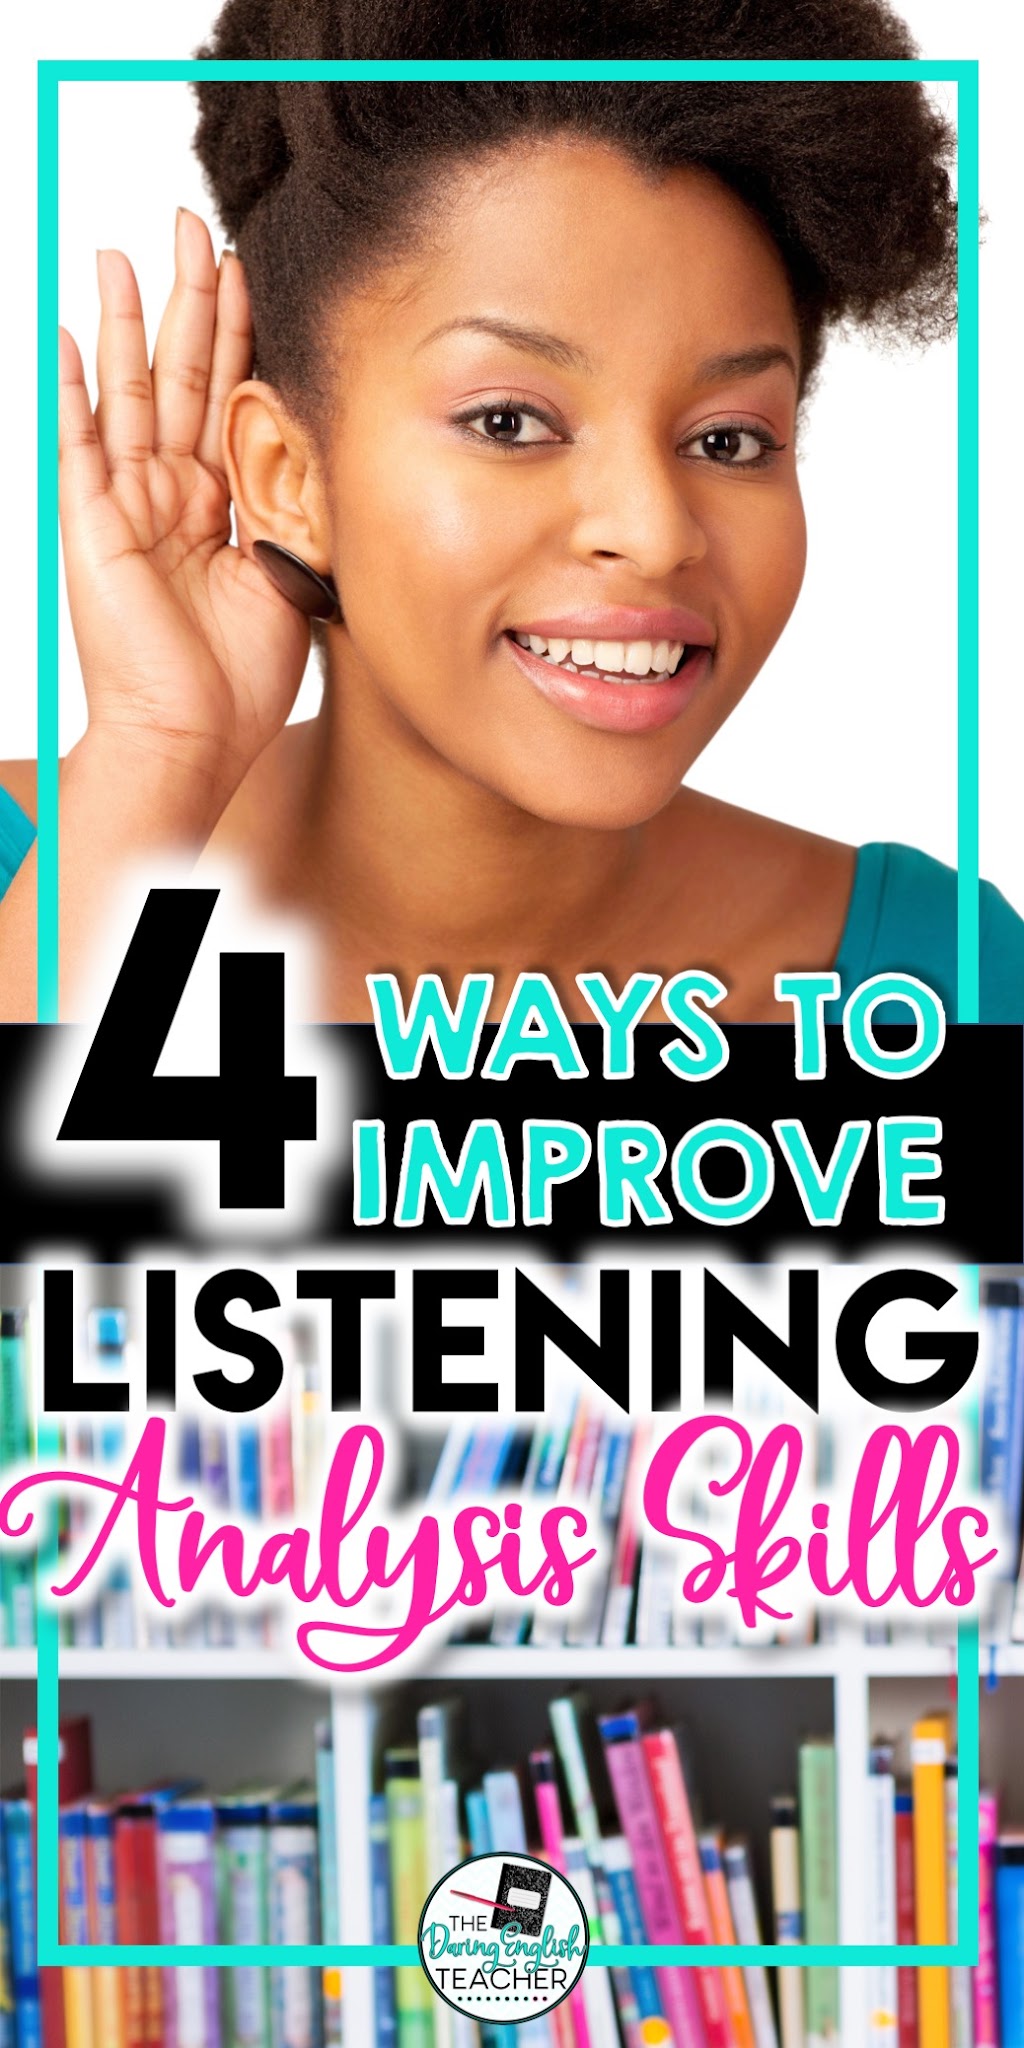 4 Ways to Analyze Audio with Listenwise